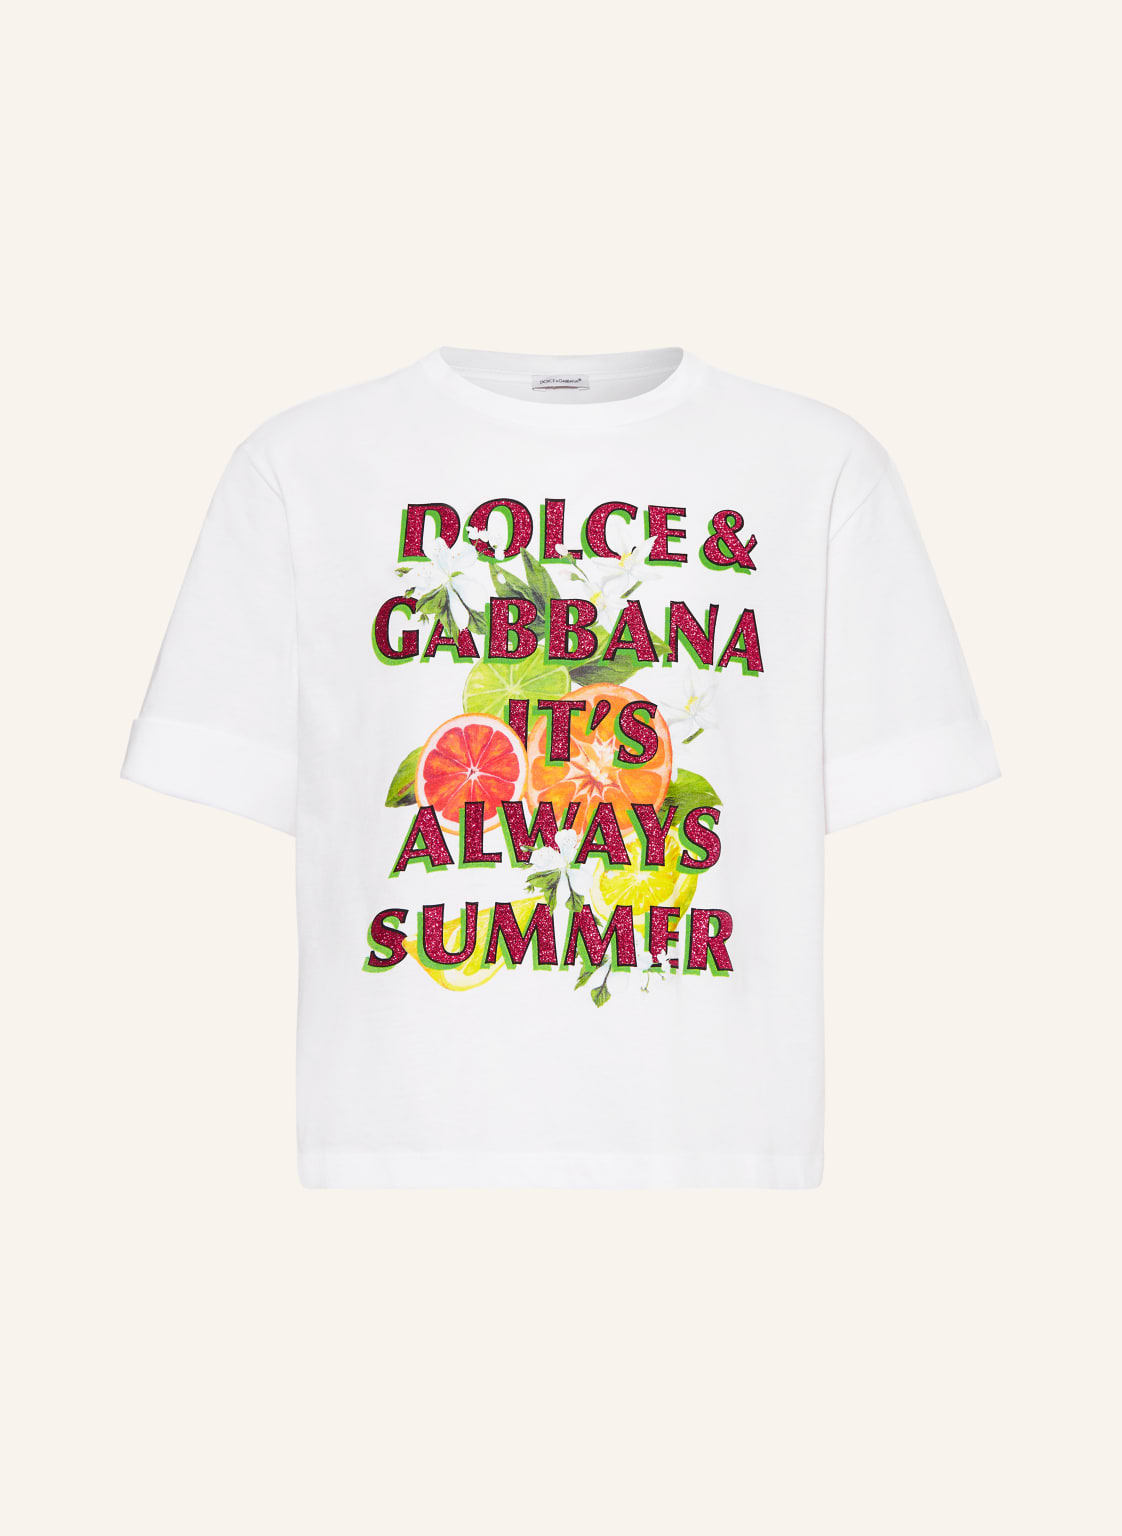 Dolce & Gabbana T-Shirt weiss von Dolce & Gabbana